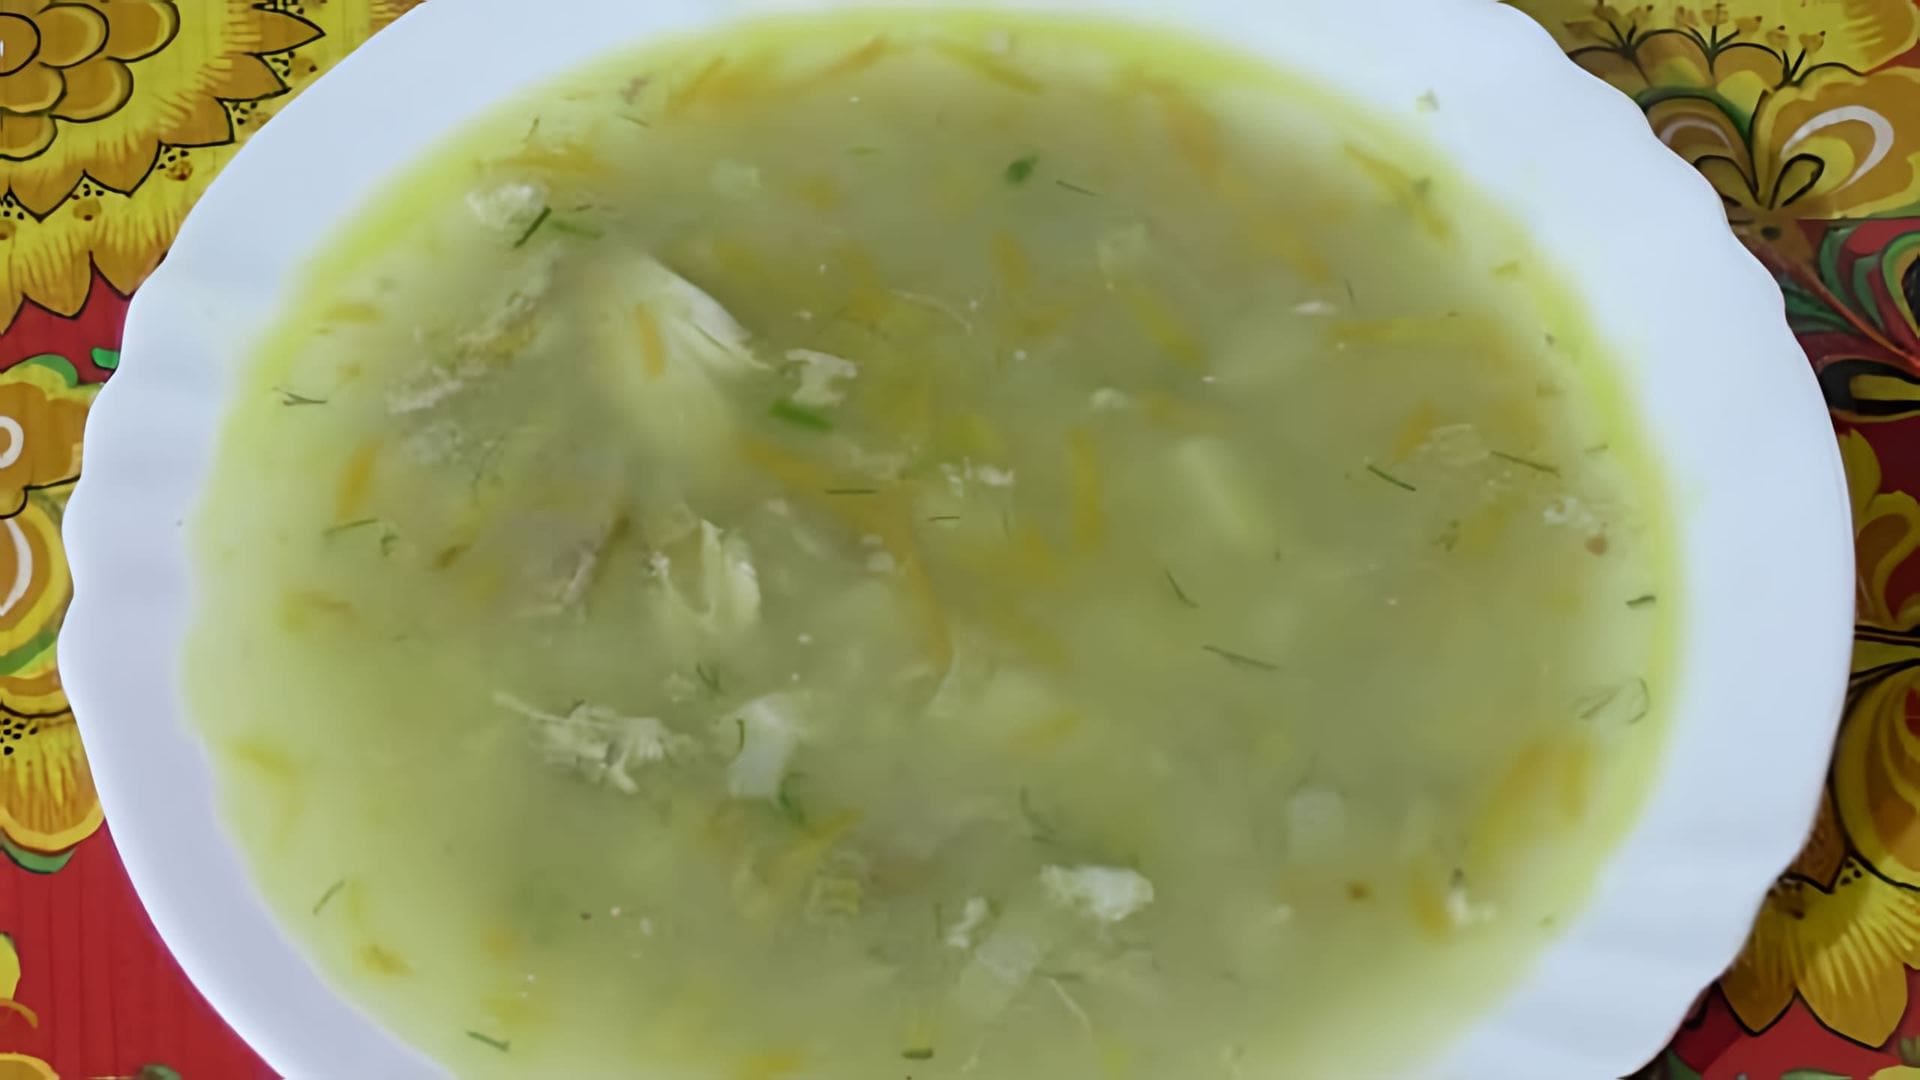 В этом видео демонстрируется процесс приготовления вкусного и простого супа с пшеничной крупой